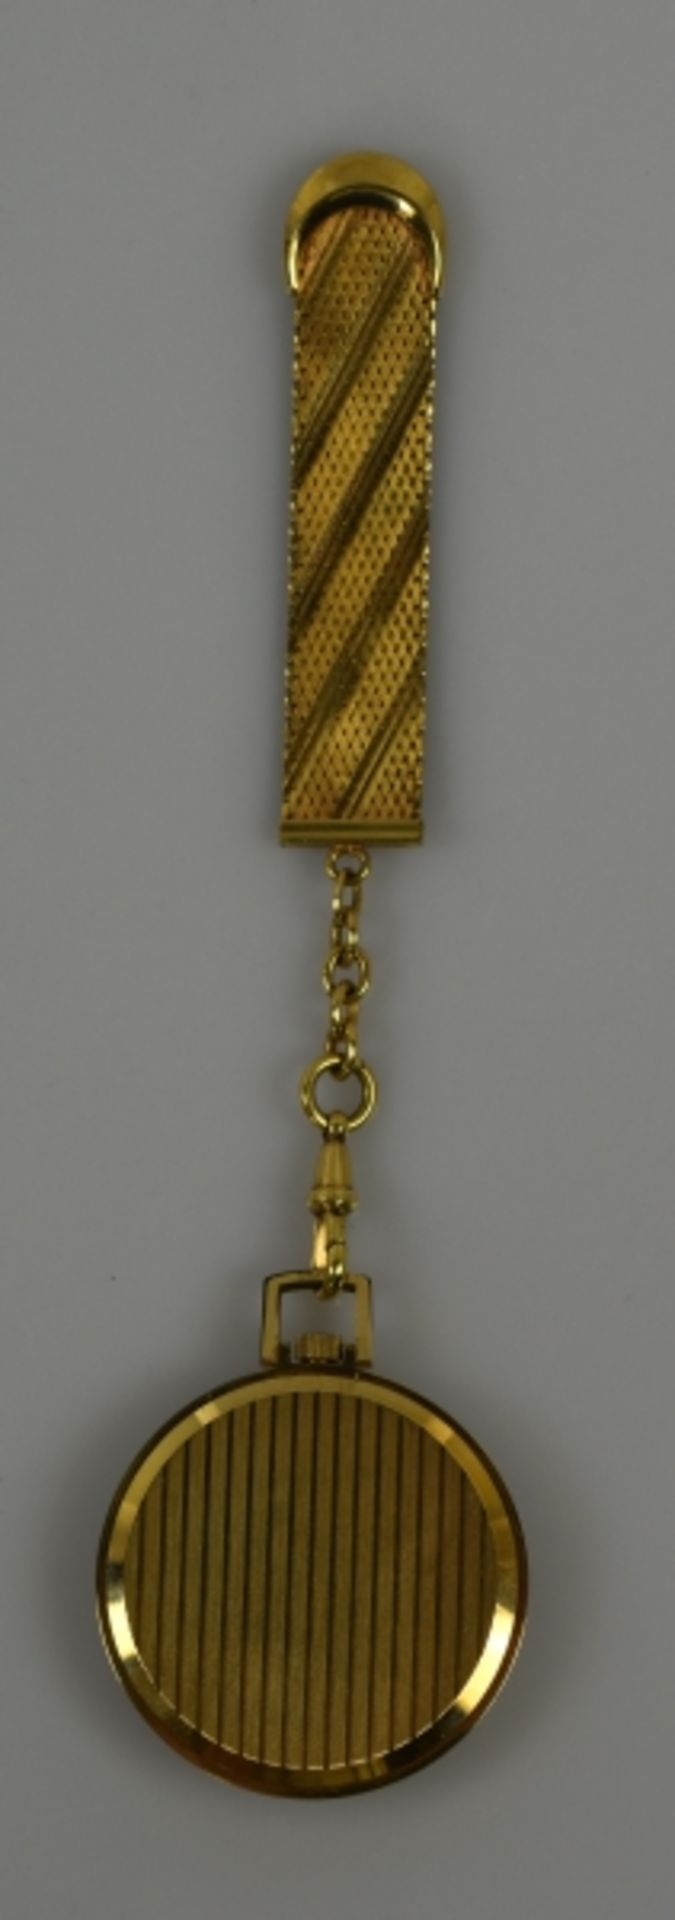 TASCHENUHR Habmann, vergoldetes Gehäuse mit hellem Zifferblatt, Goldindizes, Goldzeiger und Datum, - Bild 5 aus 5